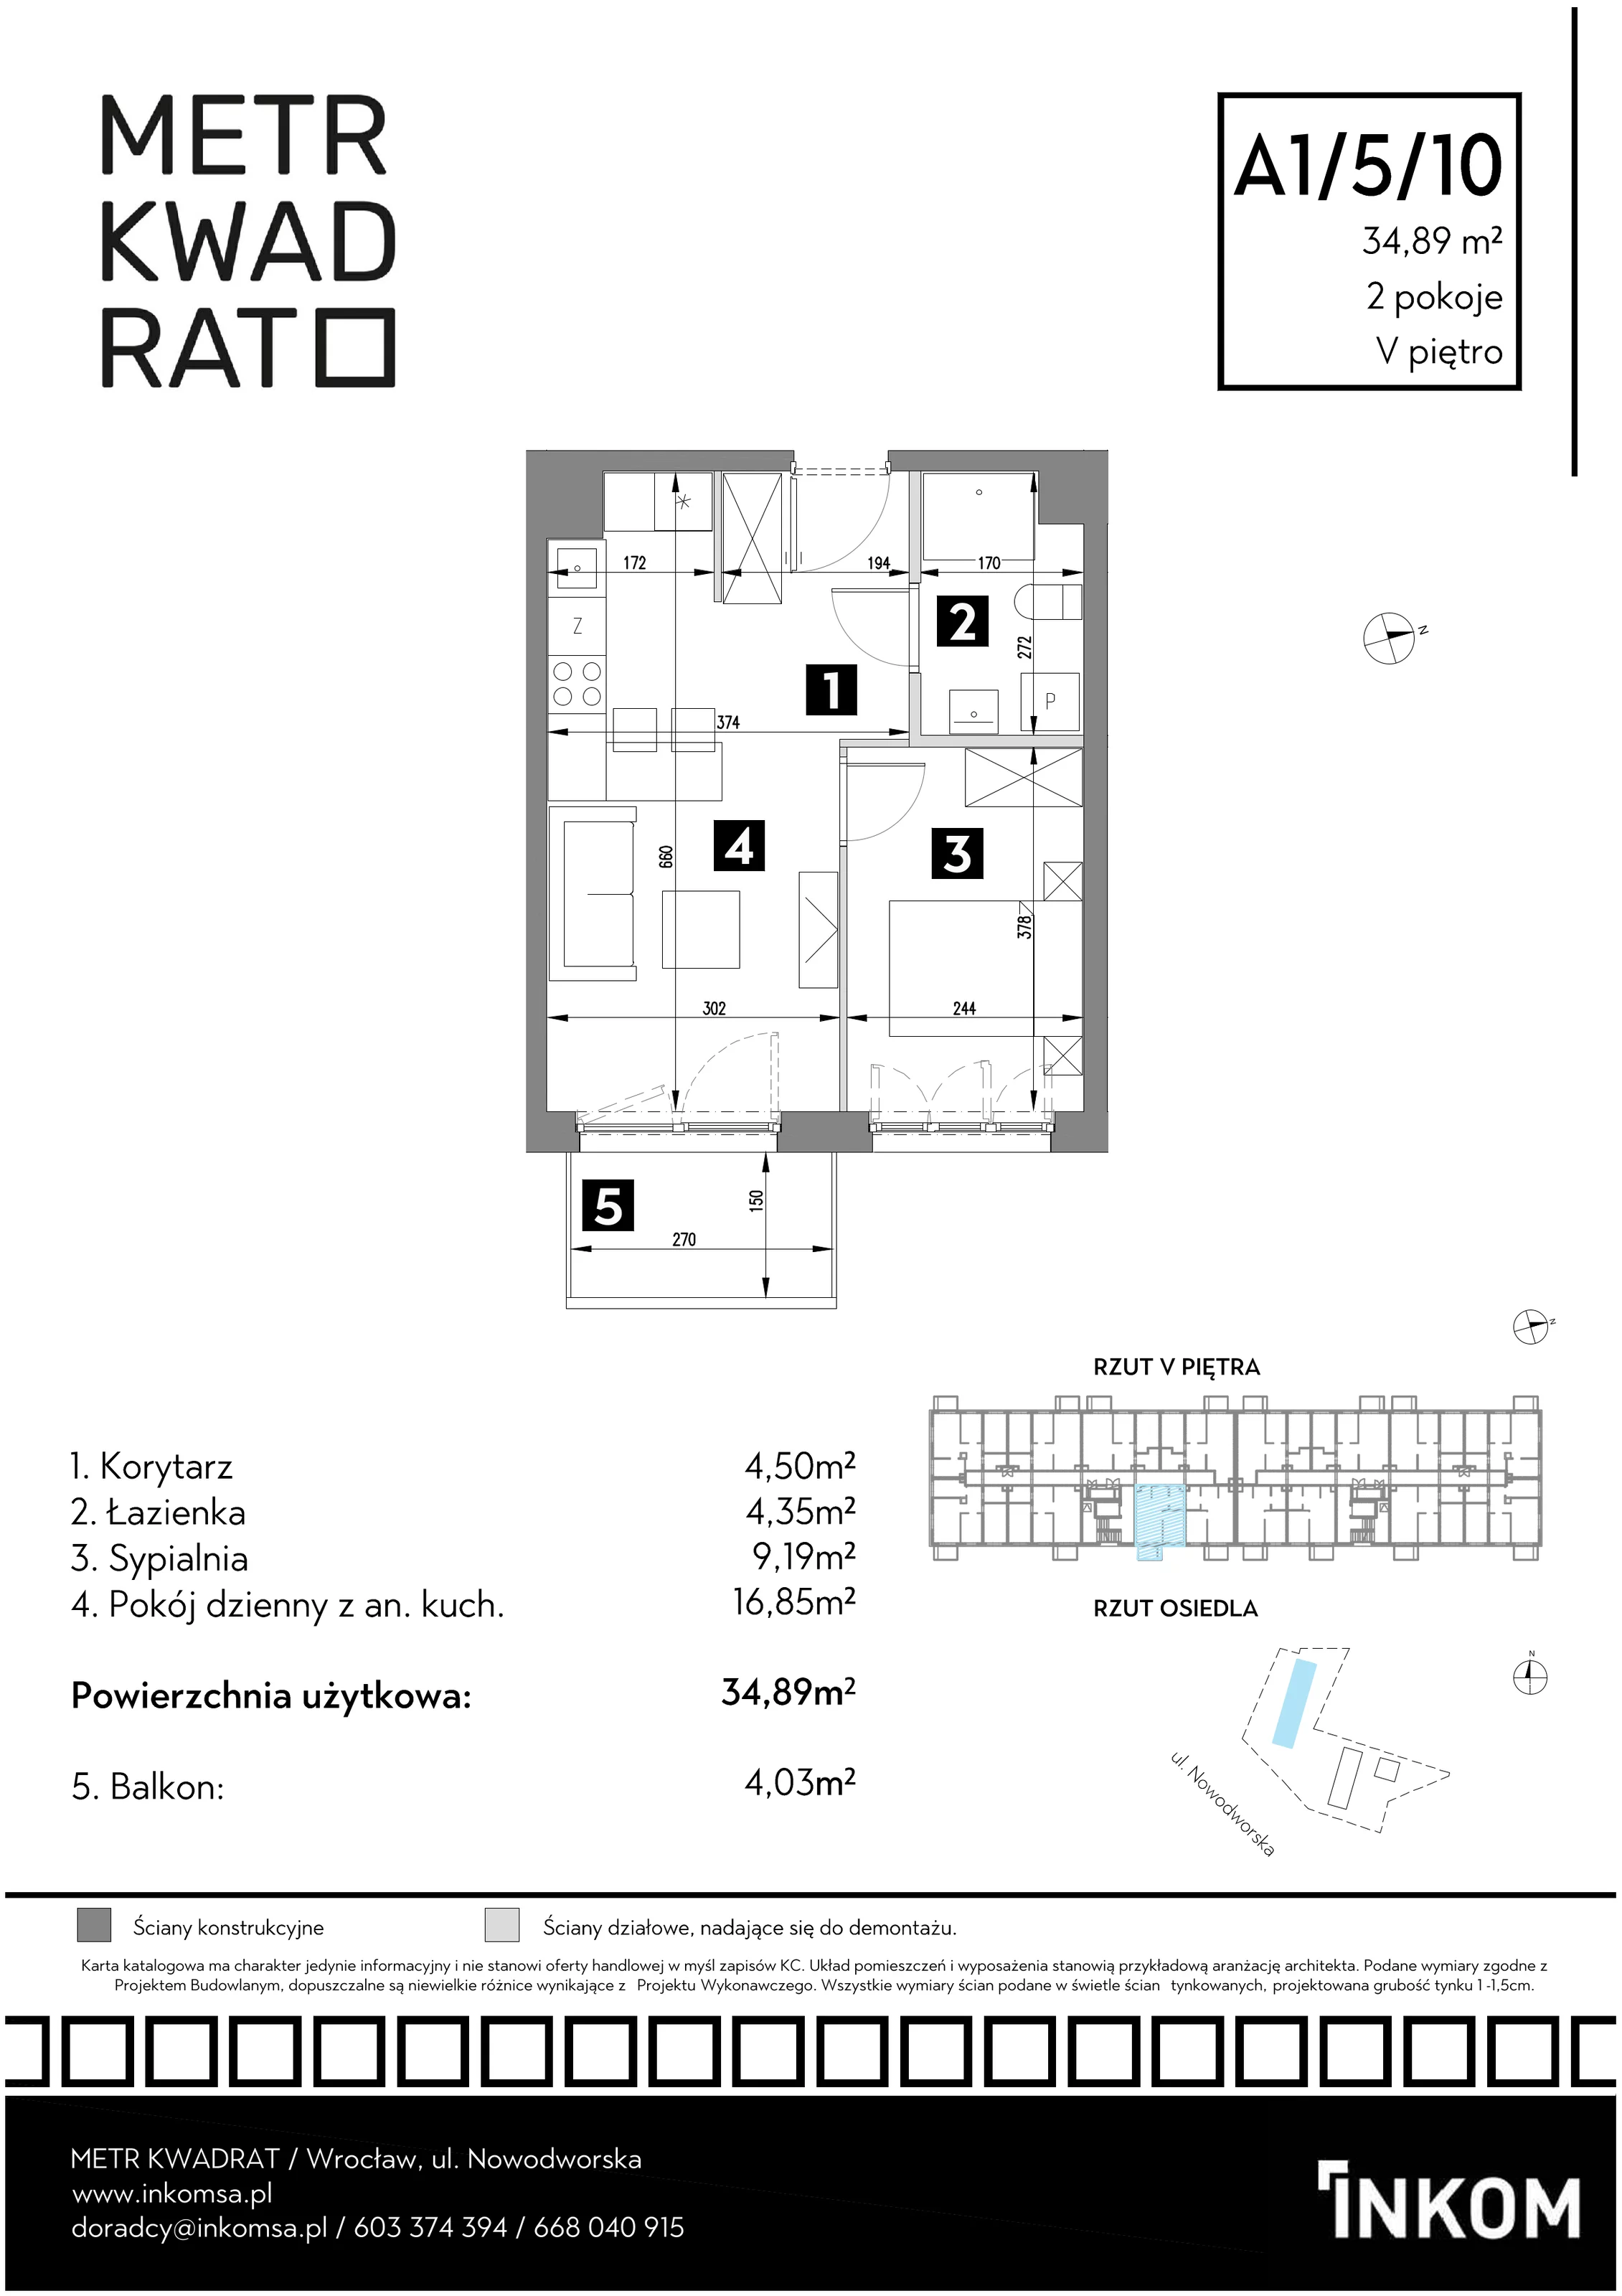 Mieszkanie 34,89 m², piętro 5, oferta nr A1/5/10, Metr Kwadrat, Wrocław, Nowy Dwór, ul. Nowodworska 17B